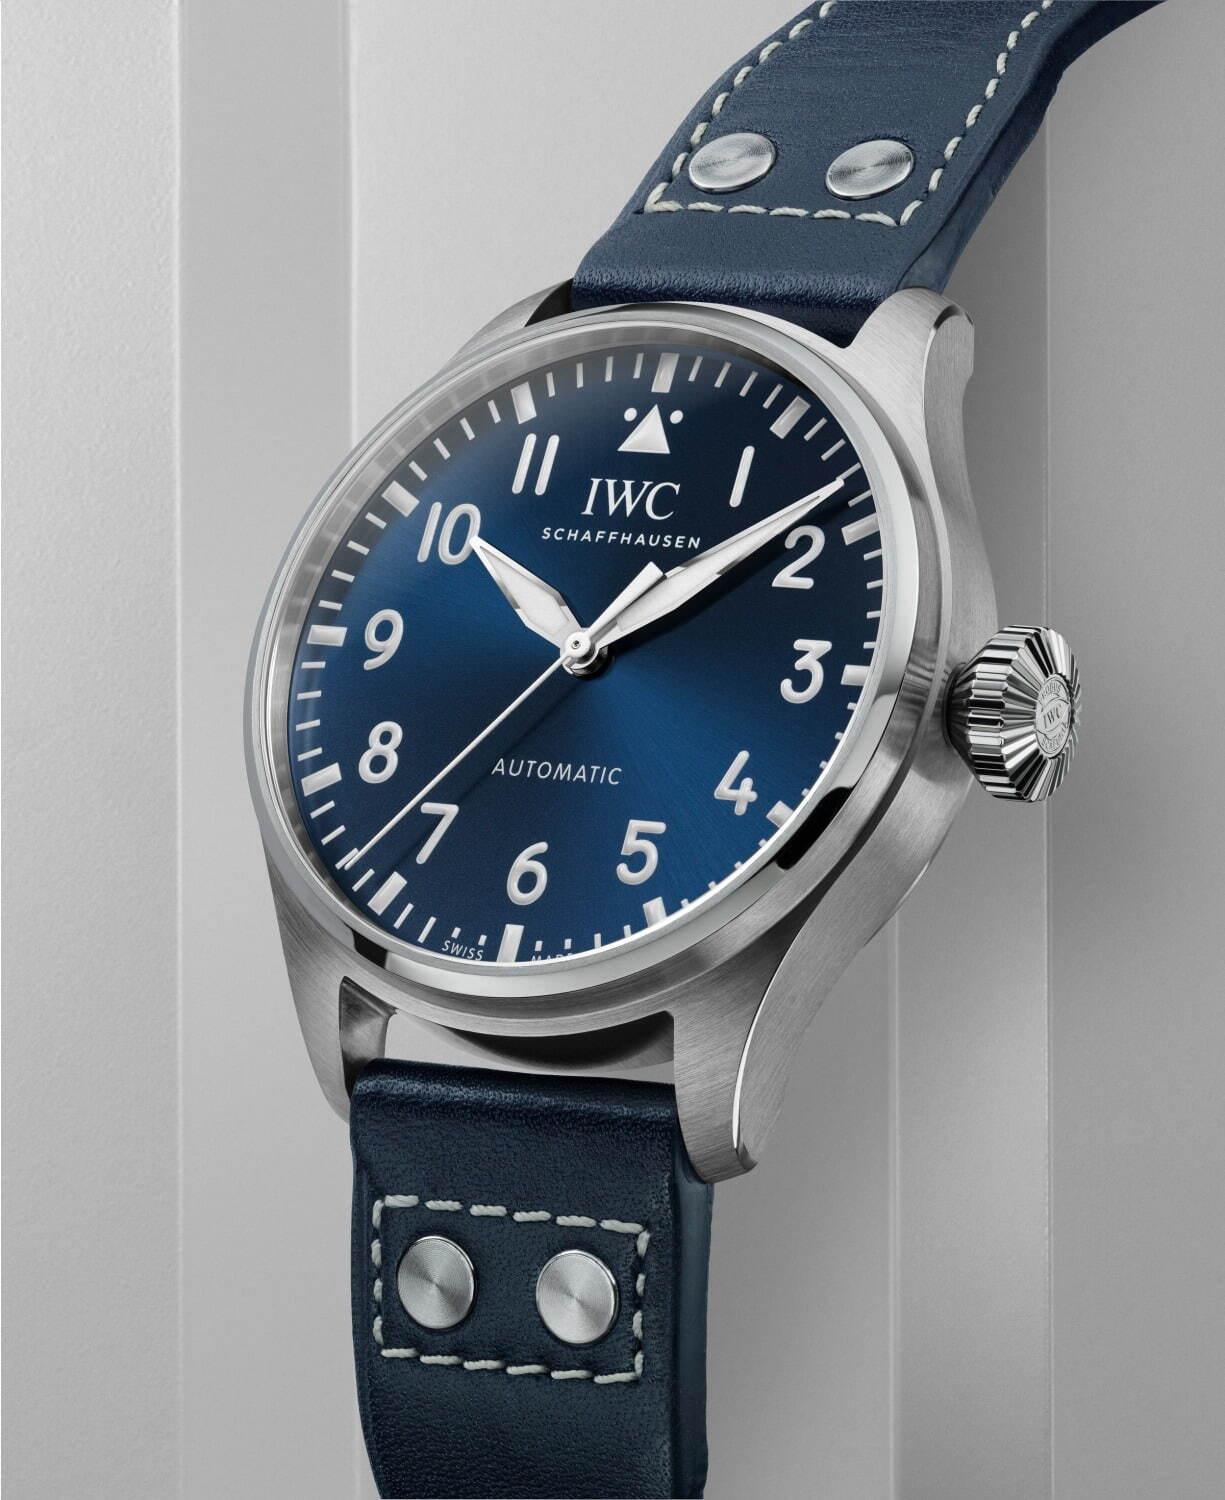 IWC「ビッグ・パイロット・ウォッチ」43mmケースの21年新作、装着感が向上した3針腕時計 コピー